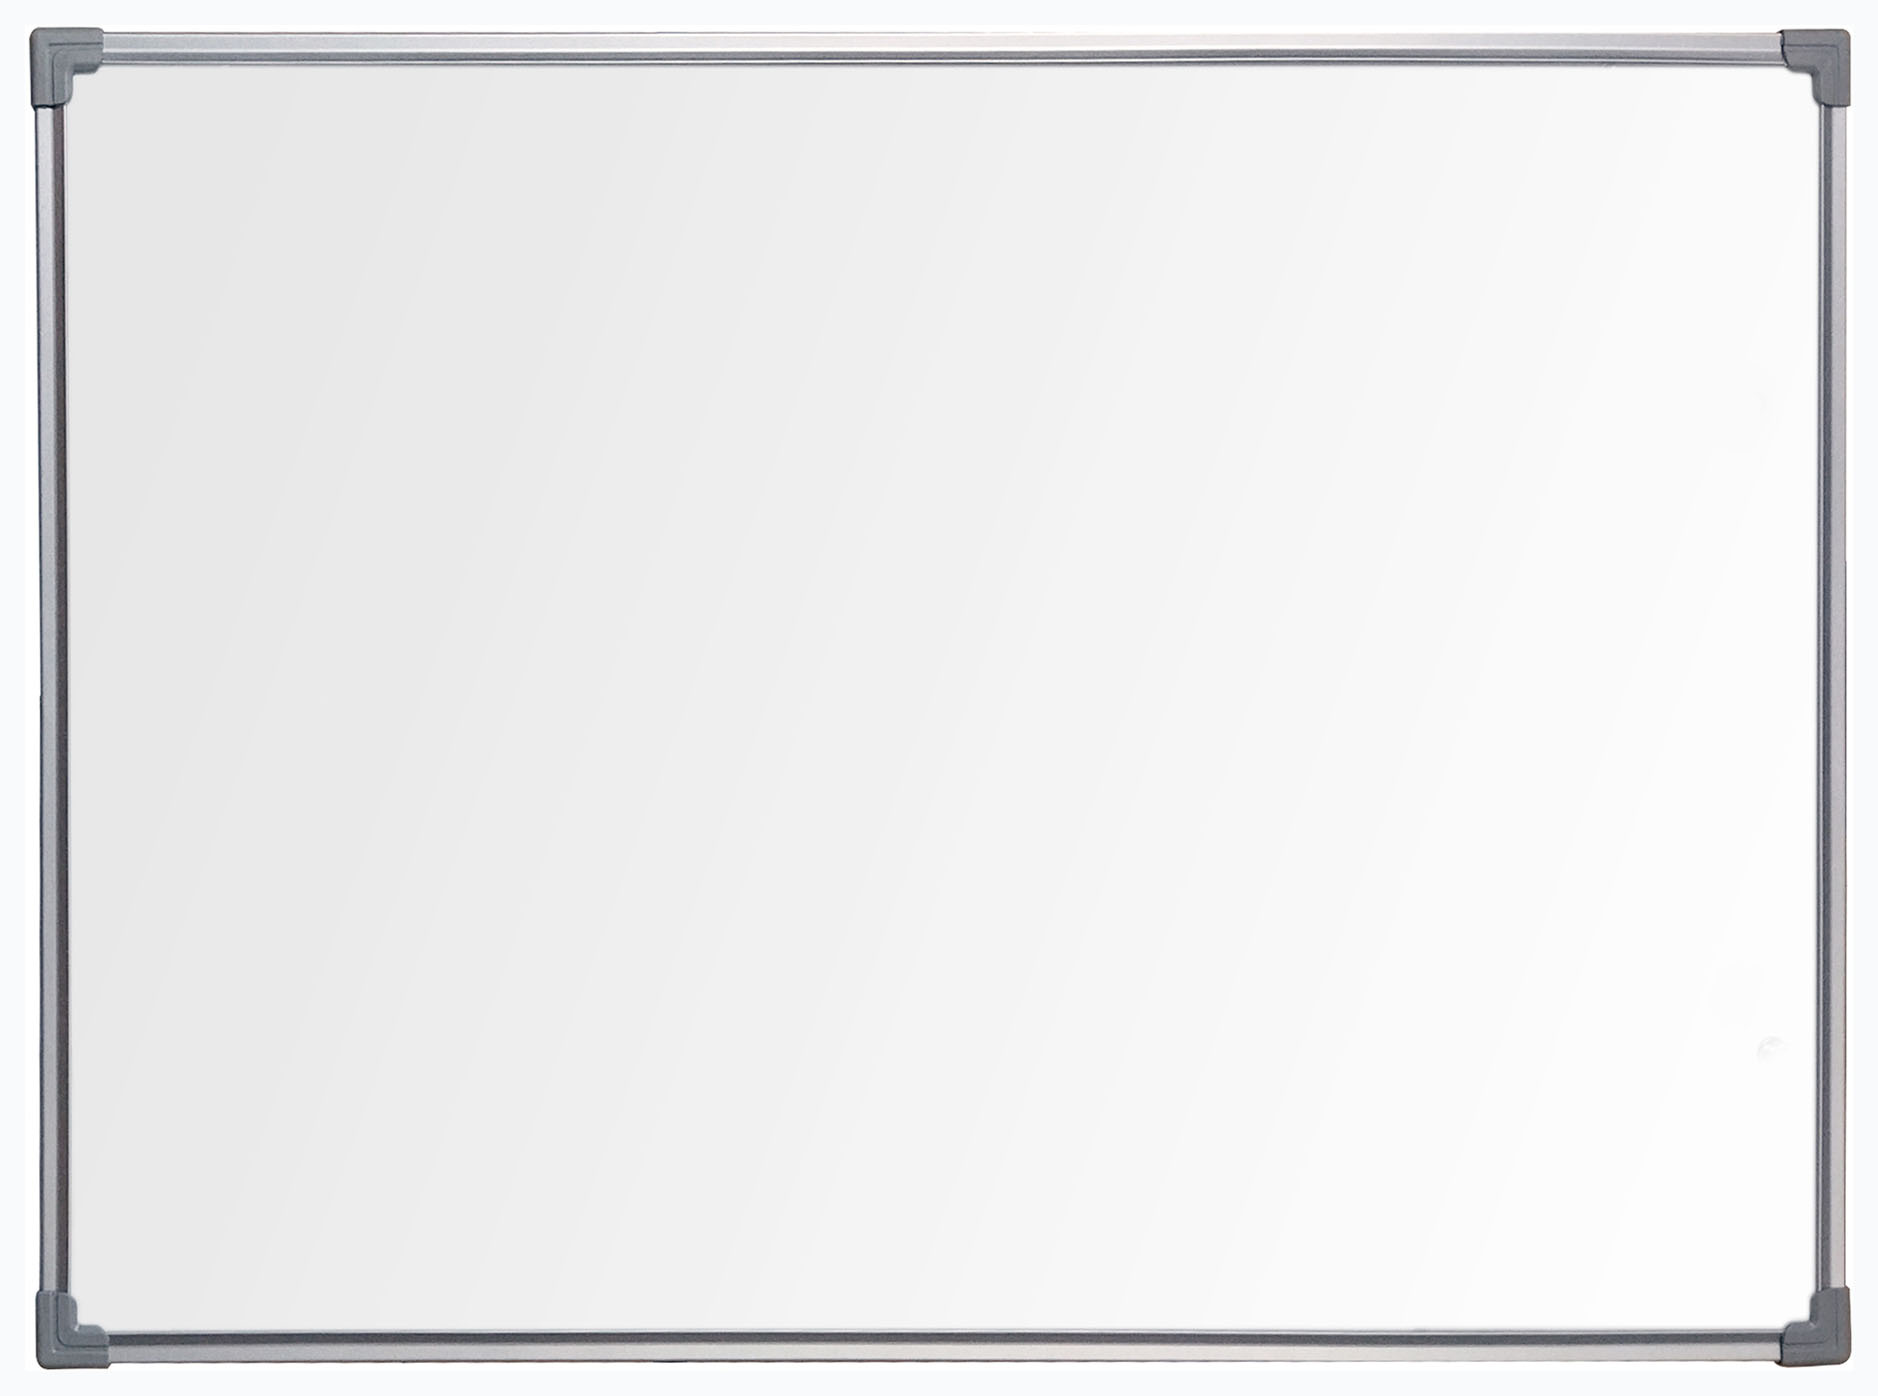 Демонстрационная доска BoardSYS Ecolite 10ФСС45 магнитно-маркерная, 45x60см, лак (белый)/алюминий (серый) (10ФСС45)